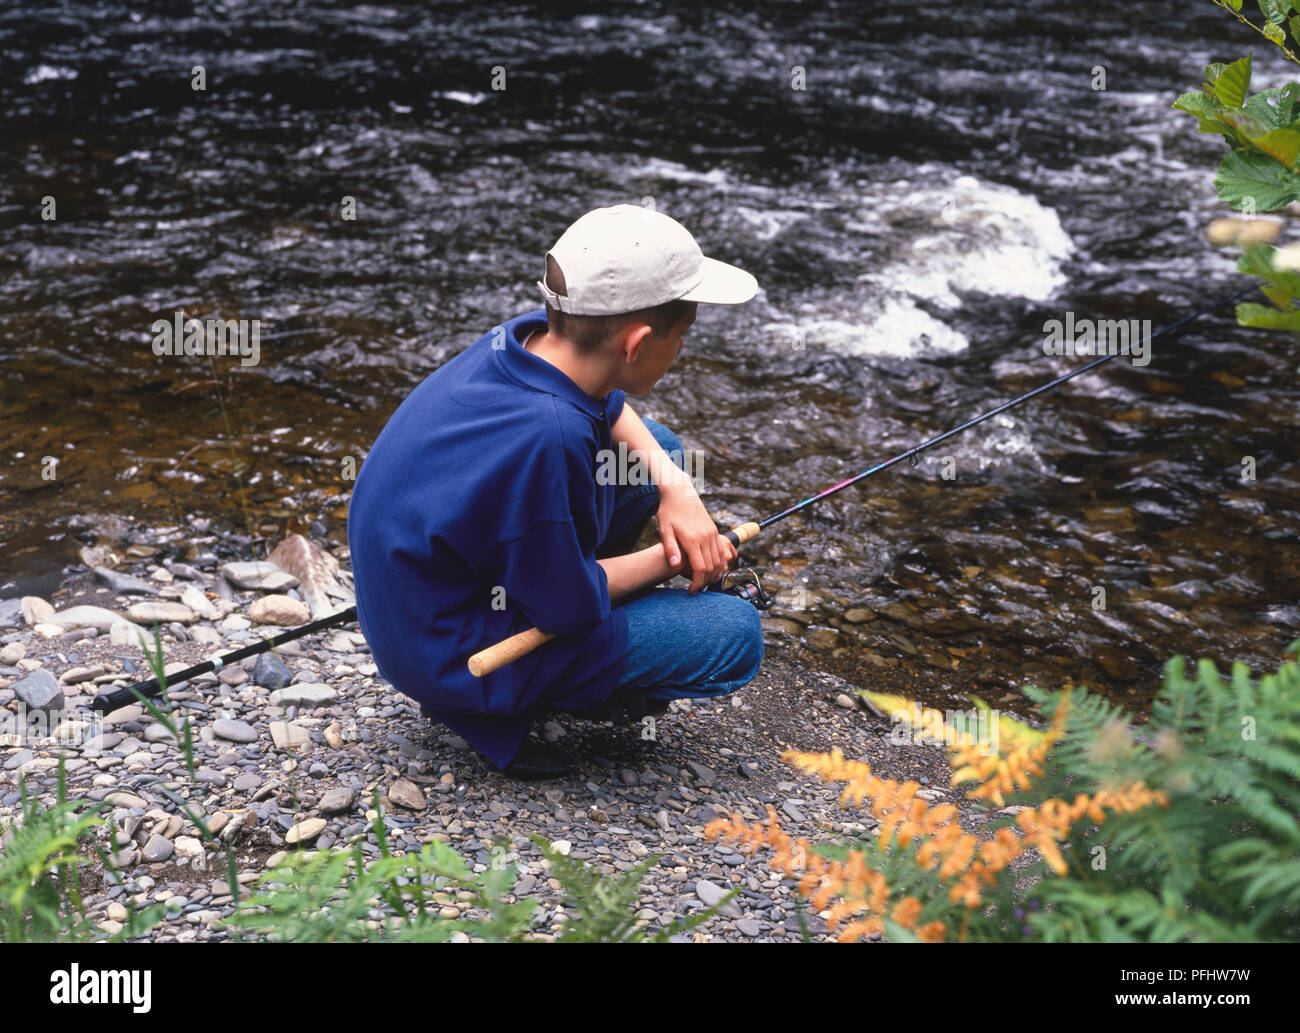 Ragazzo adolescente nel cappuccio accovacciato dal bordo del fiume casting canna da pesca in acqua, vista laterale Foto Stock